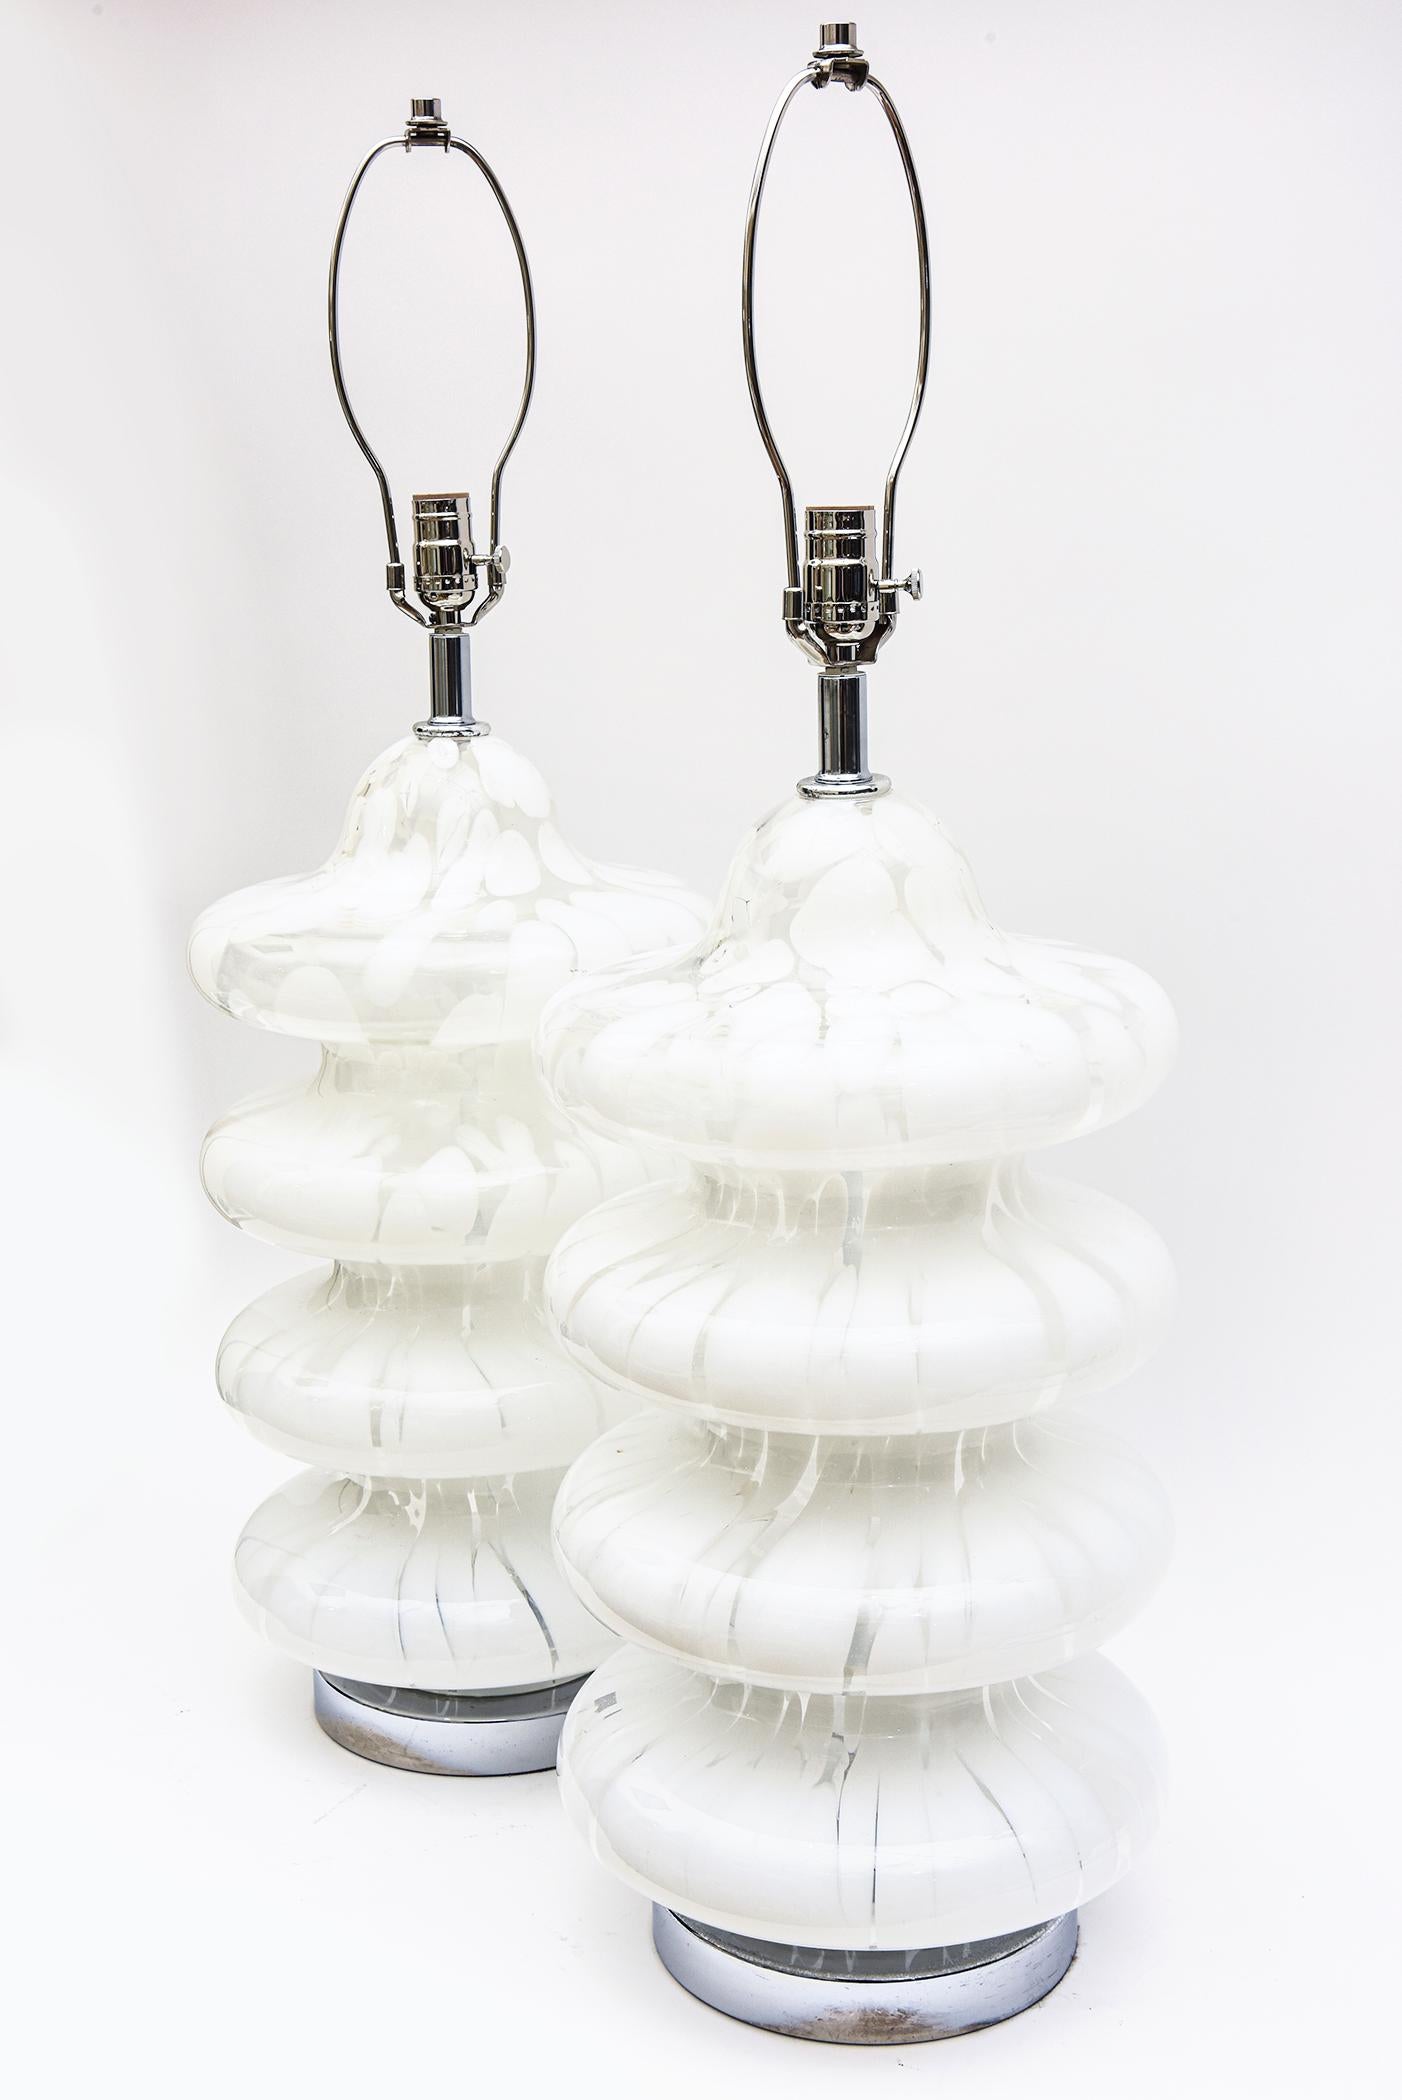 Ces lampes vintage italiennes des années 1970, soufflées à la main à 4 niveaux par Carlo Nason pour Whiting, présentent des motifs abstraits de tourbillons marbrés et aléatoires de verre blanc et clair. Elles sont appelées lampes Icone et sont très